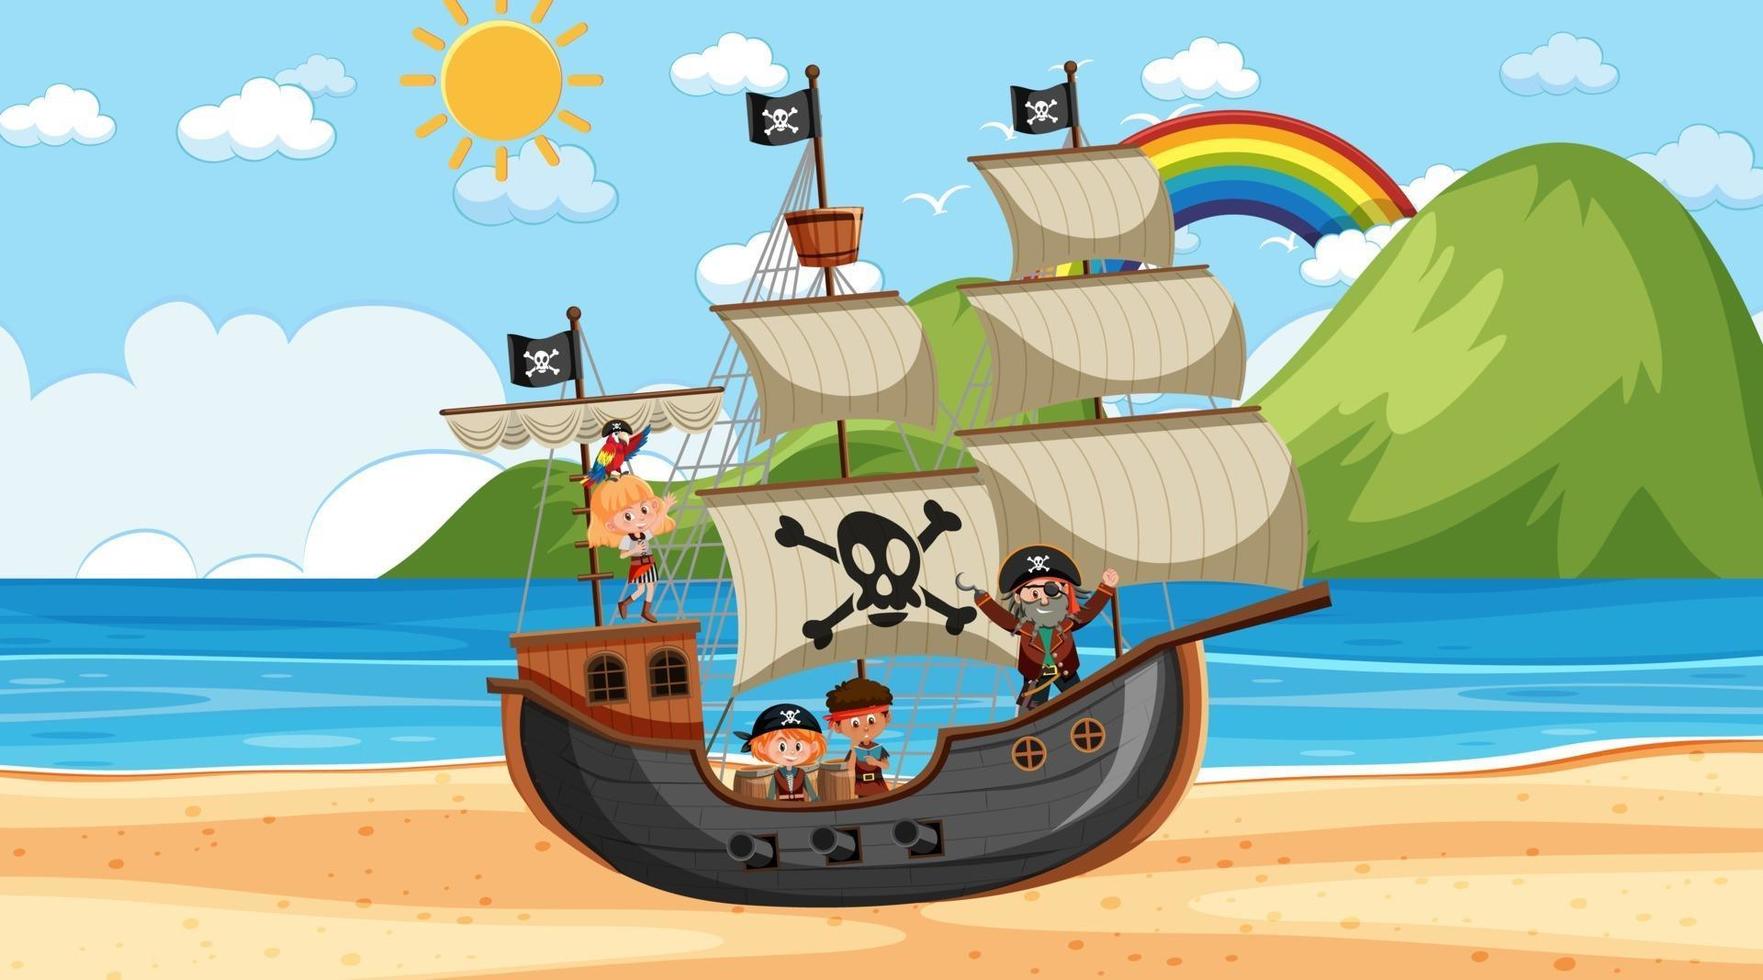 playa con barco pirata en la escena diurna en estilo de dibujos animados vector